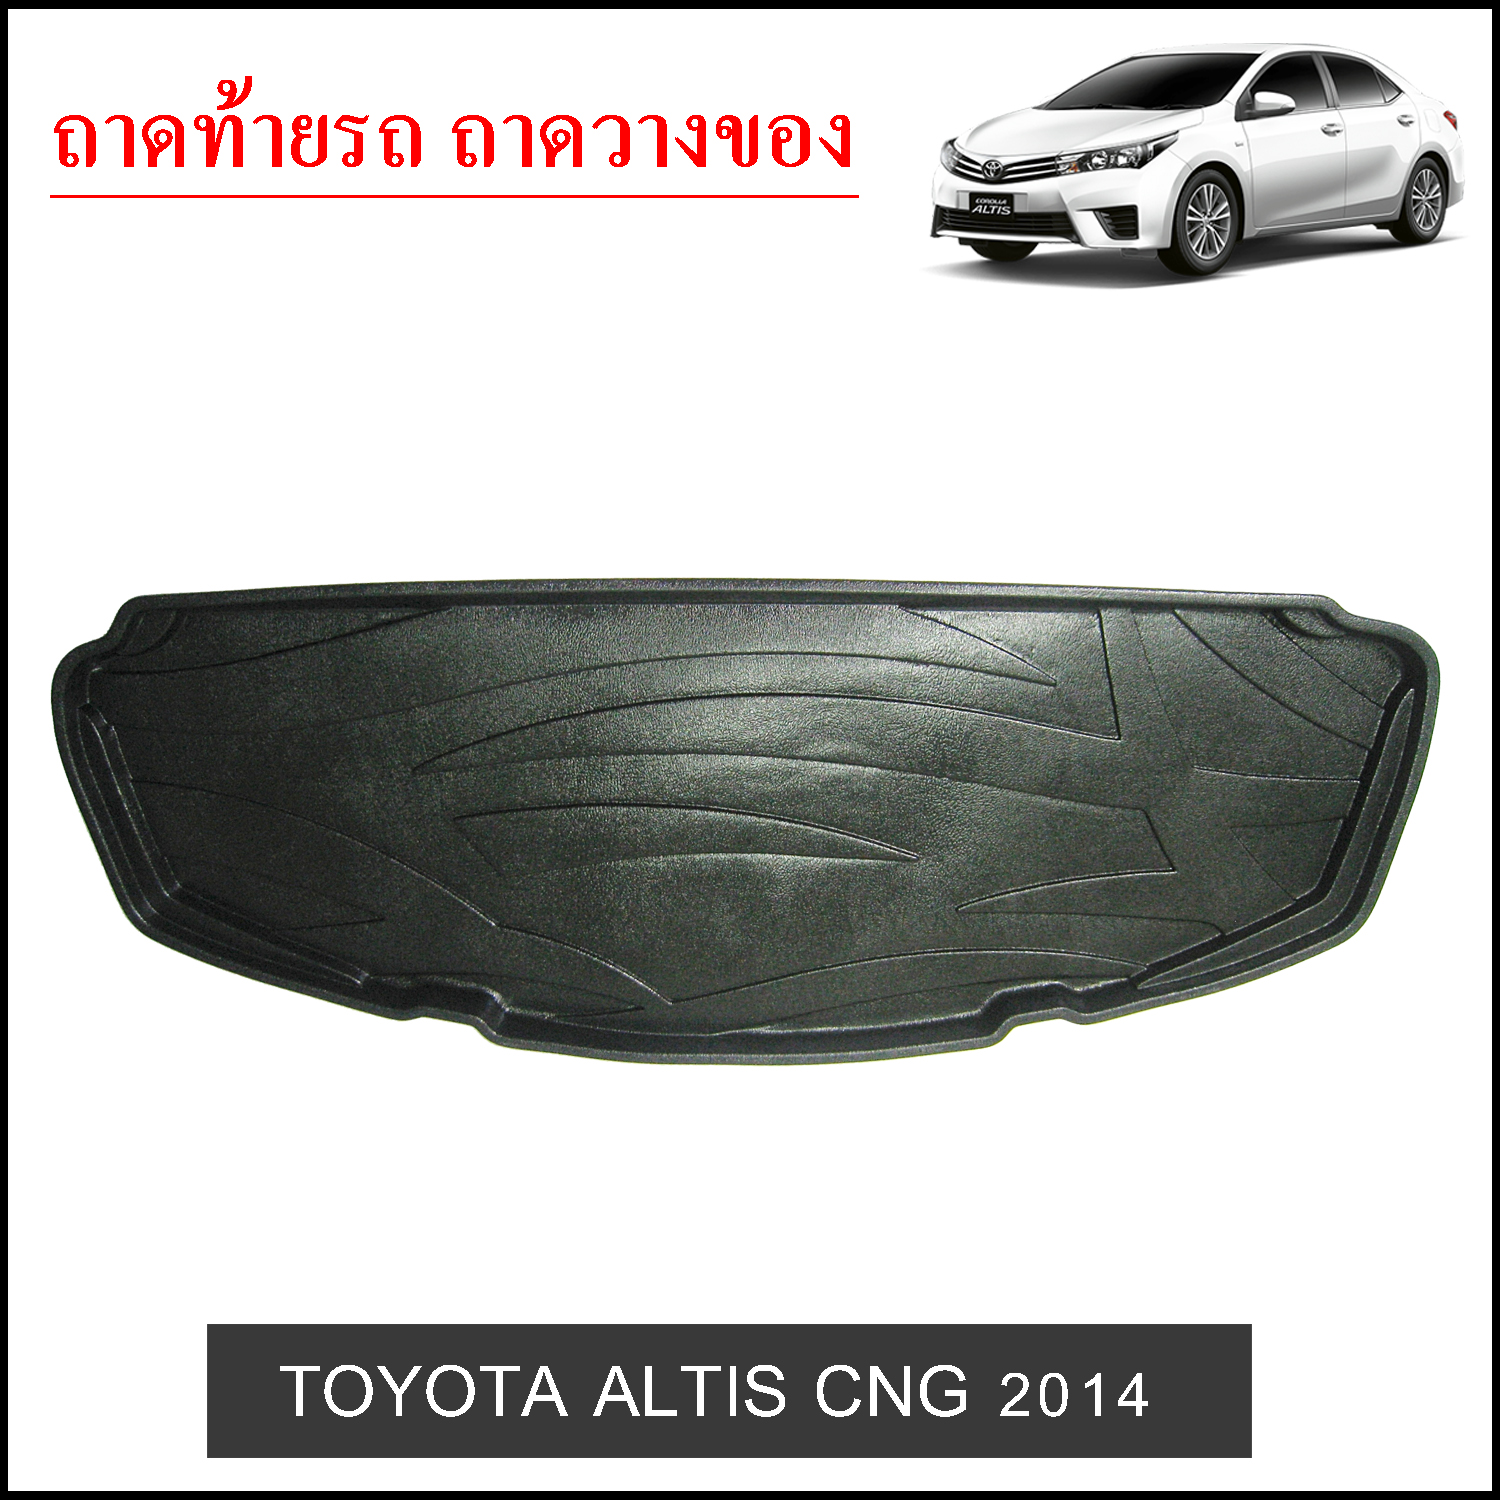 Toyota Altis 2014 CNG